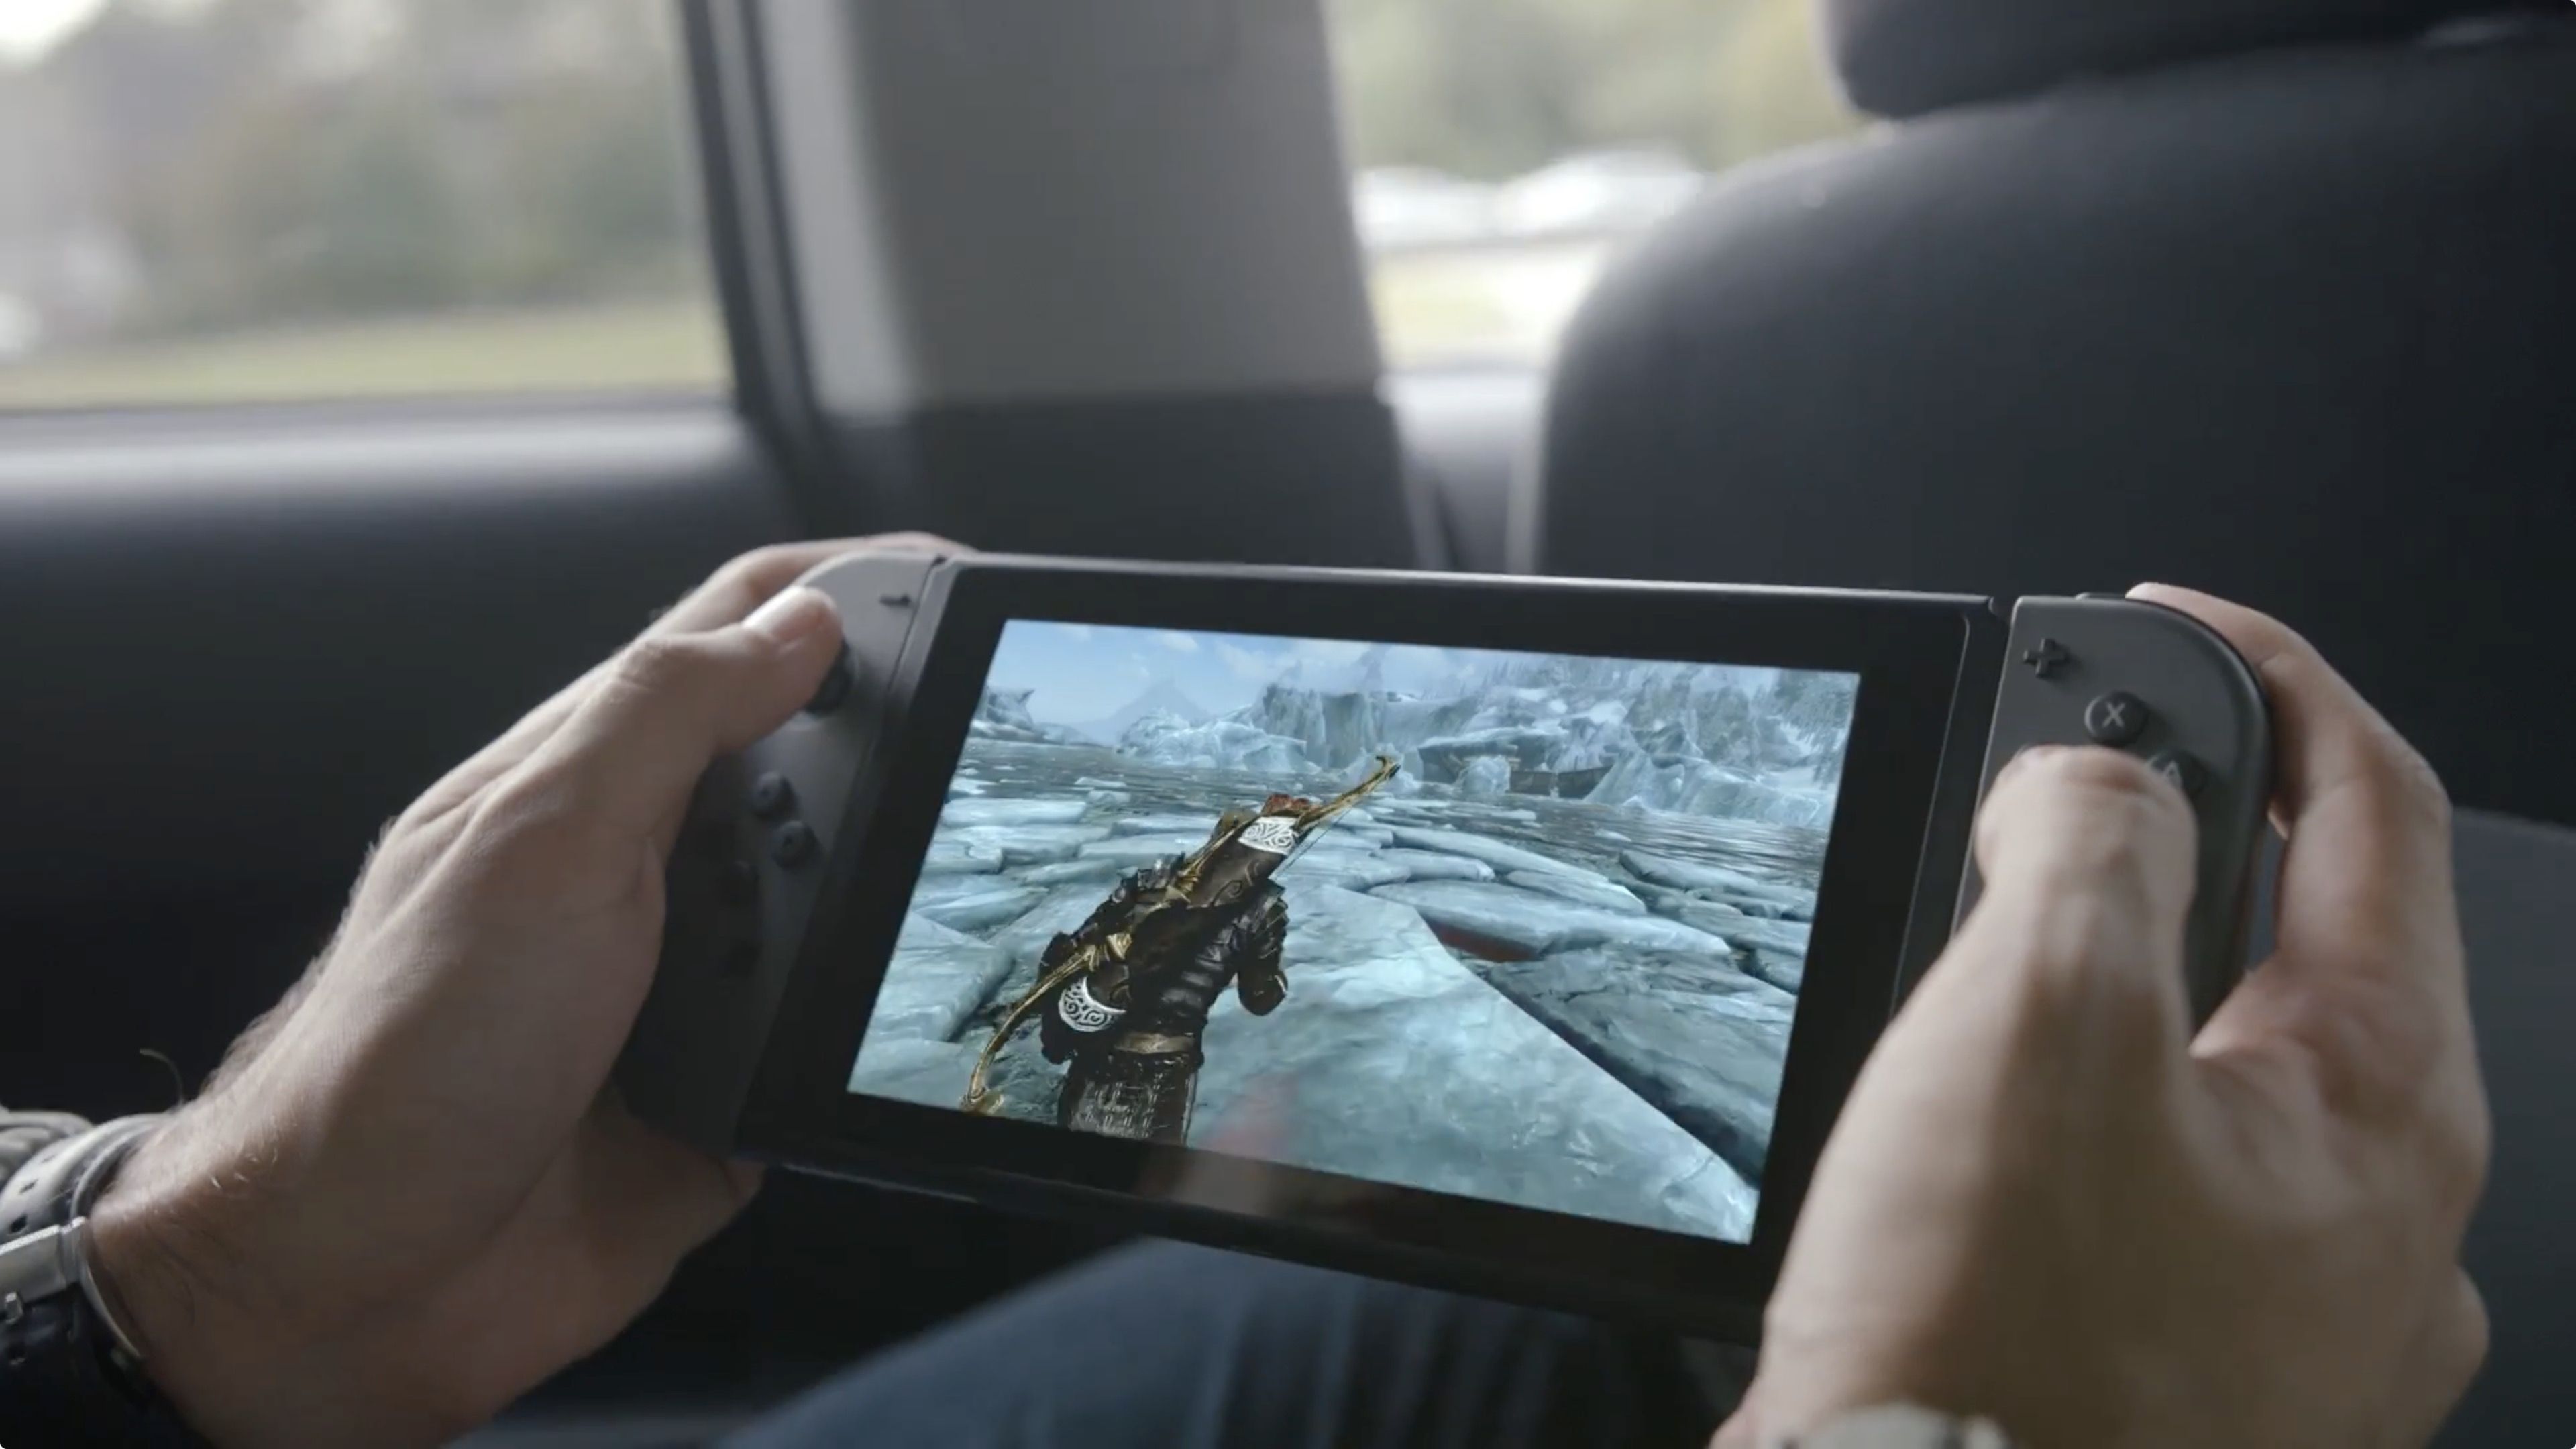 Nintendo Switch atingiu em 5 meses quase a metade das 10 milhões de vendas esperadas para a plataforma.